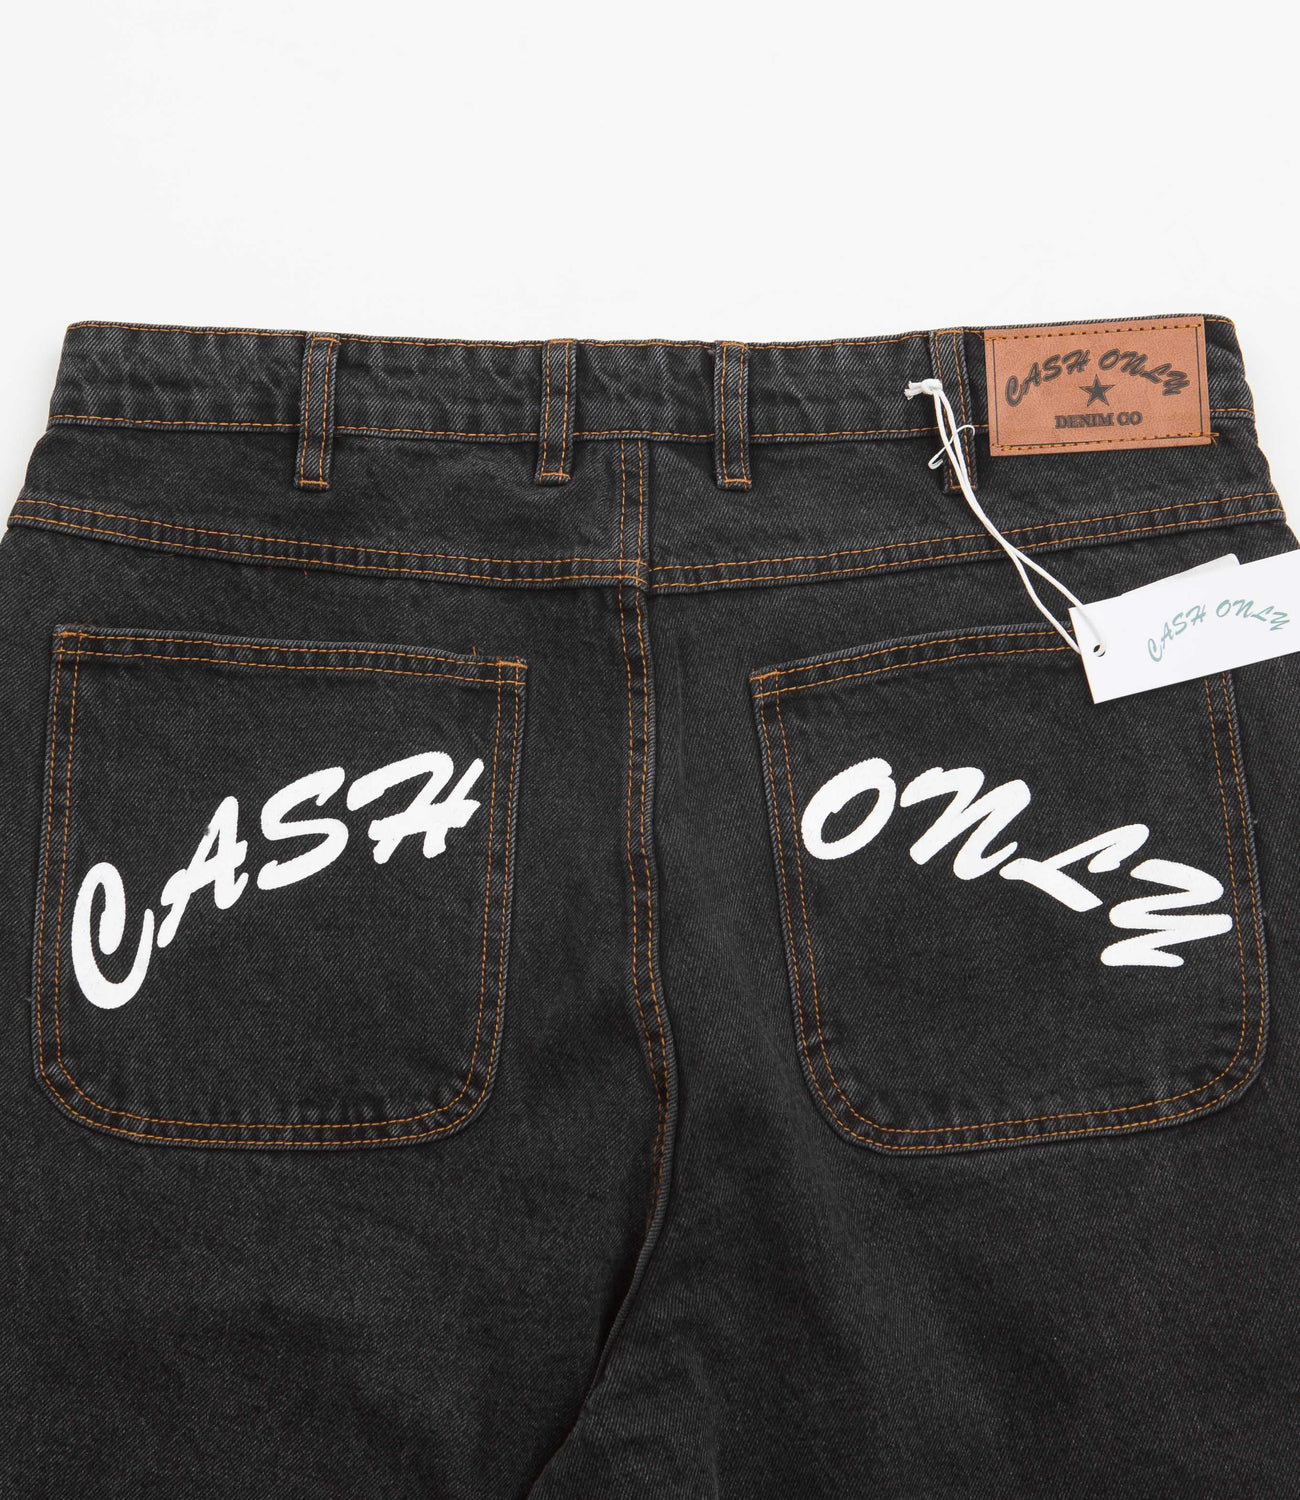 Cash Only Cashvisu Baggy Jeans - Black | Flatspot